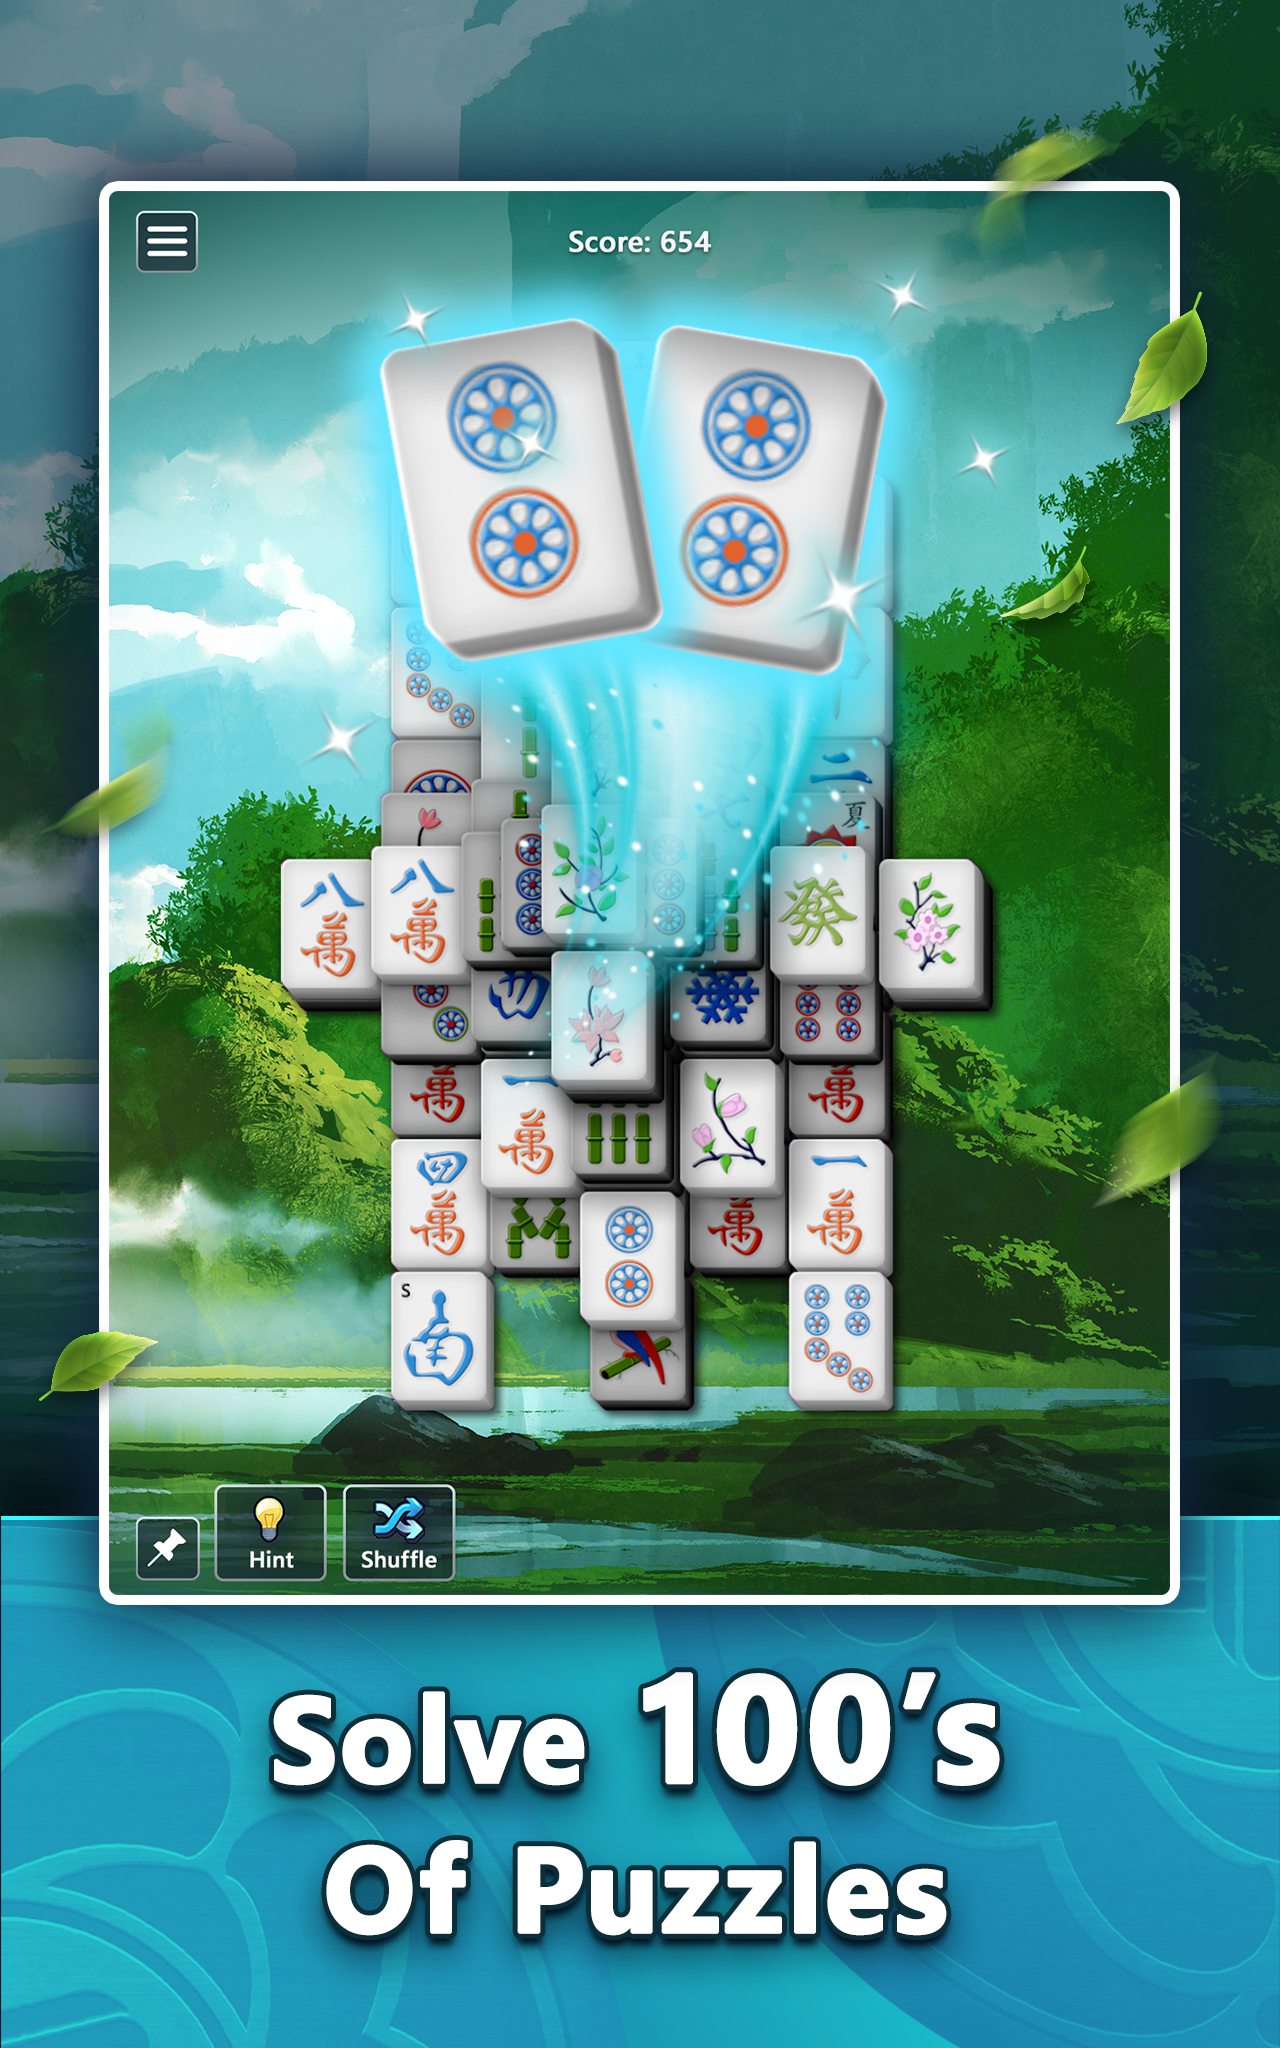 Screenshot 1 of Mahjong ng Microsoft 4.4.6231.1